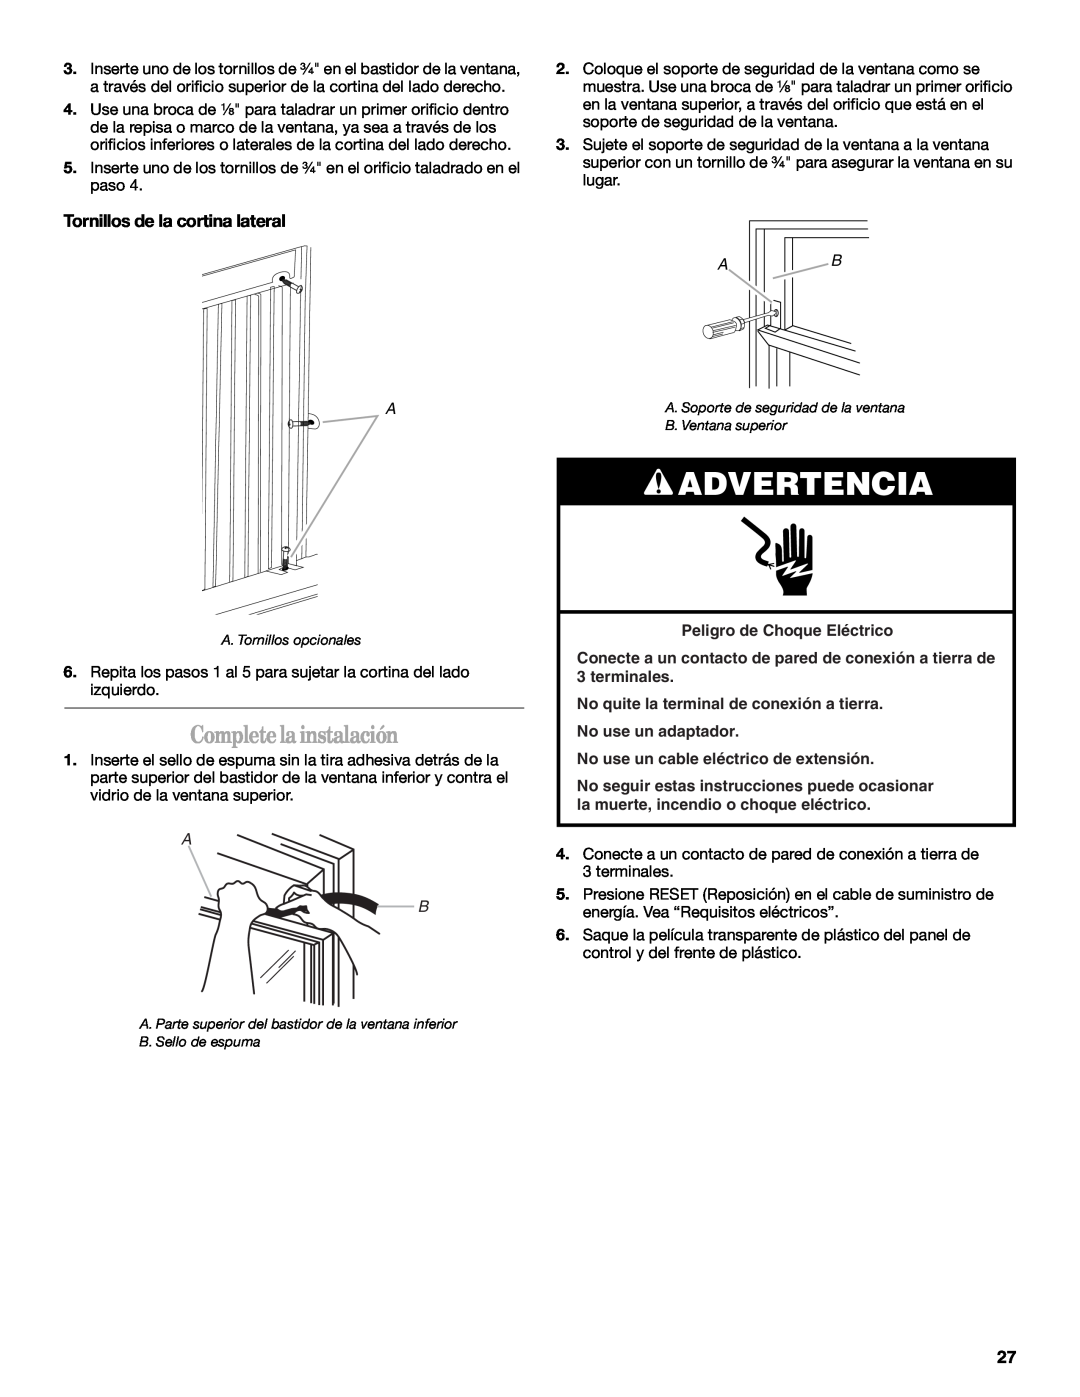 Whirlpool 66161279 manual Complete la instalación, Tornillos de la cortina lateral, Advertencia 